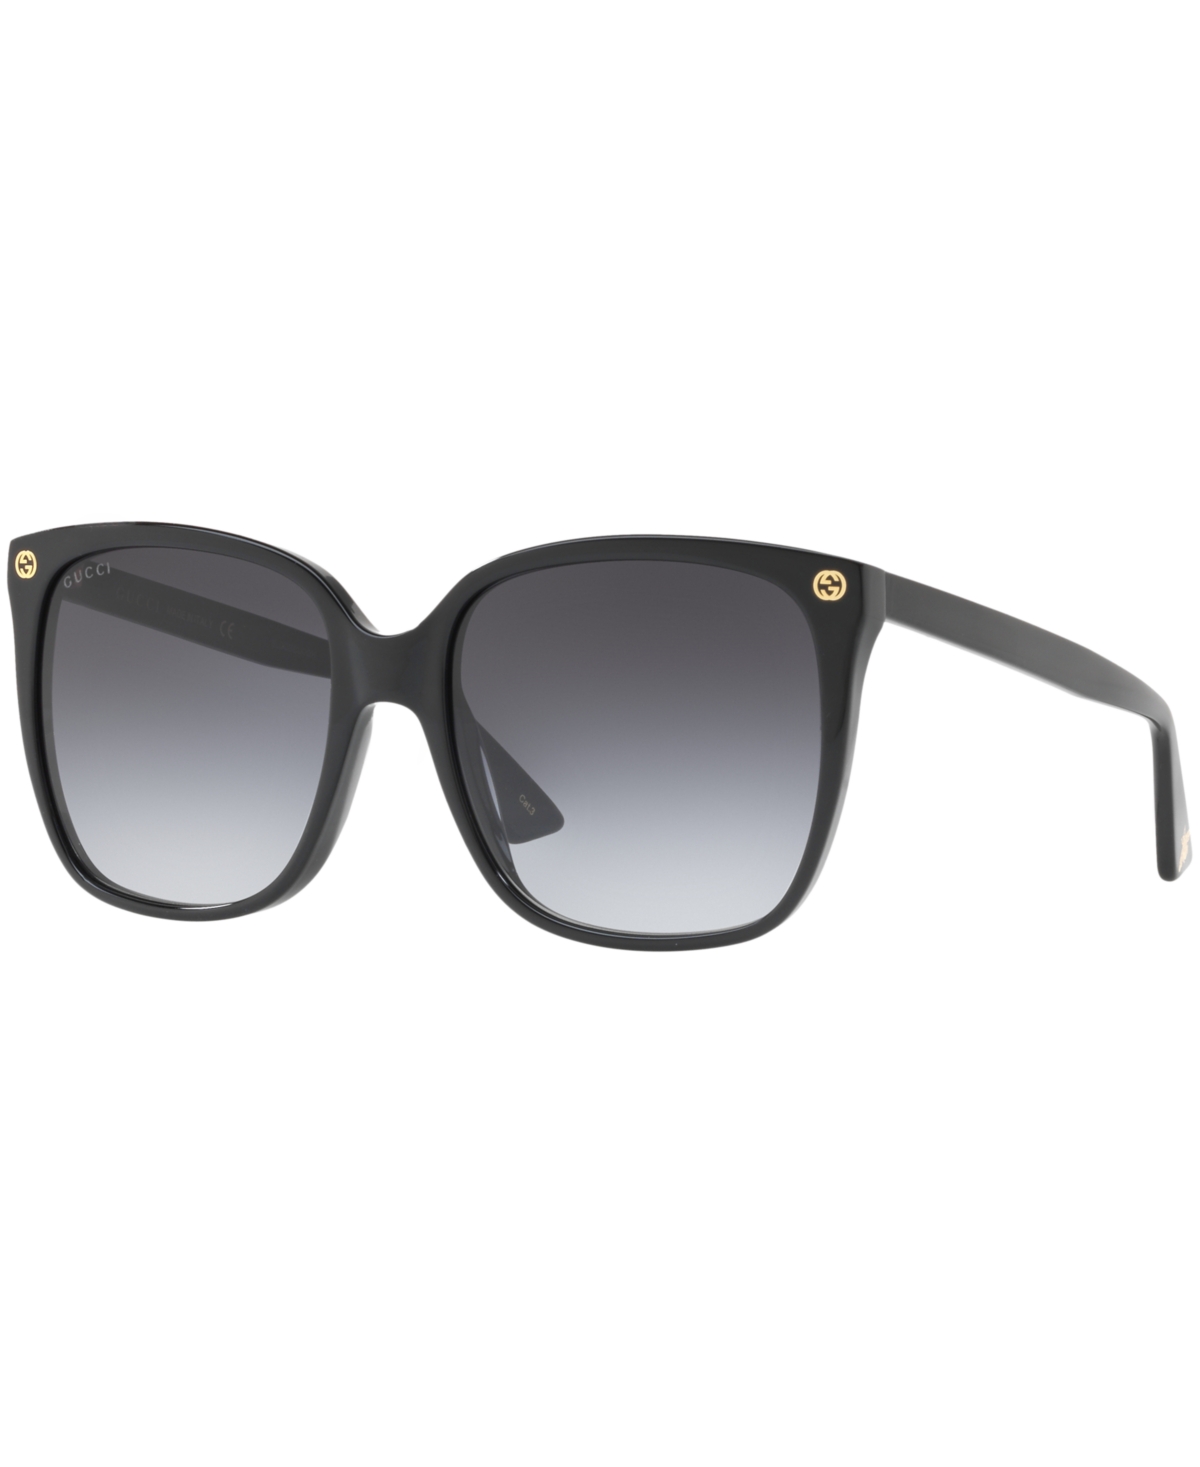 Gucci Sunglasses, Gg0022s In Black,grey Gradient